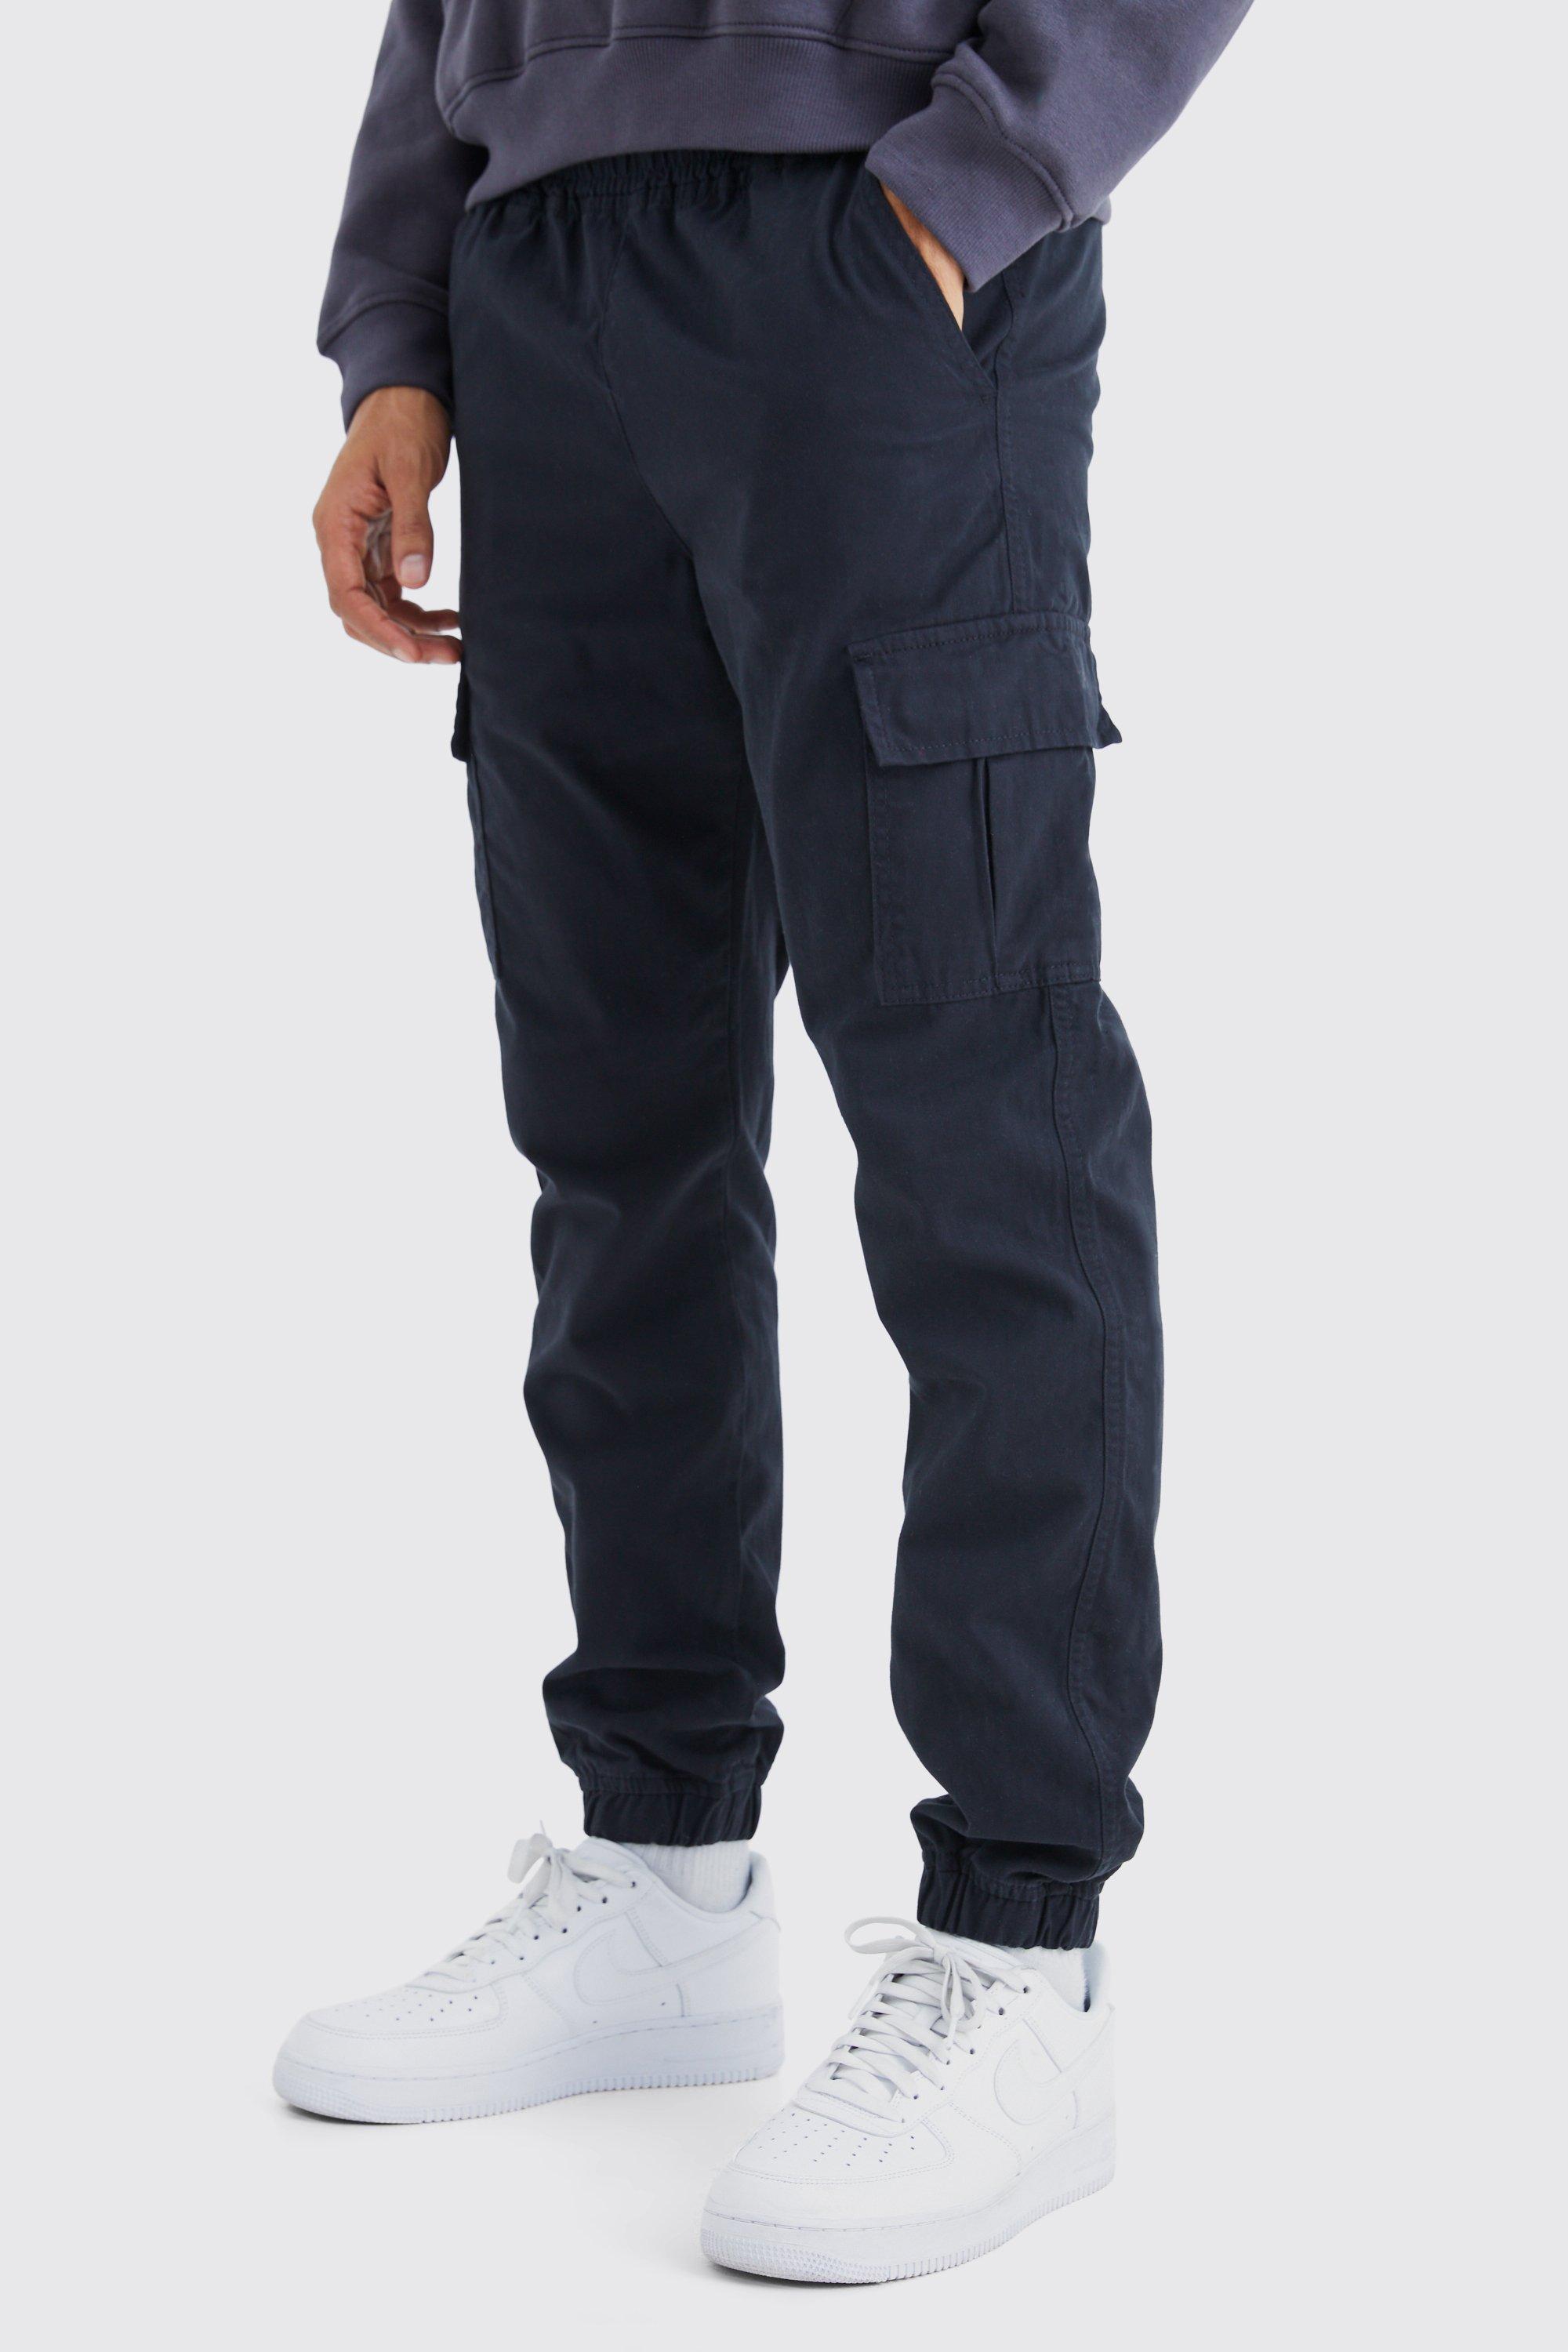 Image of Pantaloni Cargo Slim Fit con vita elasticizzata, Nero